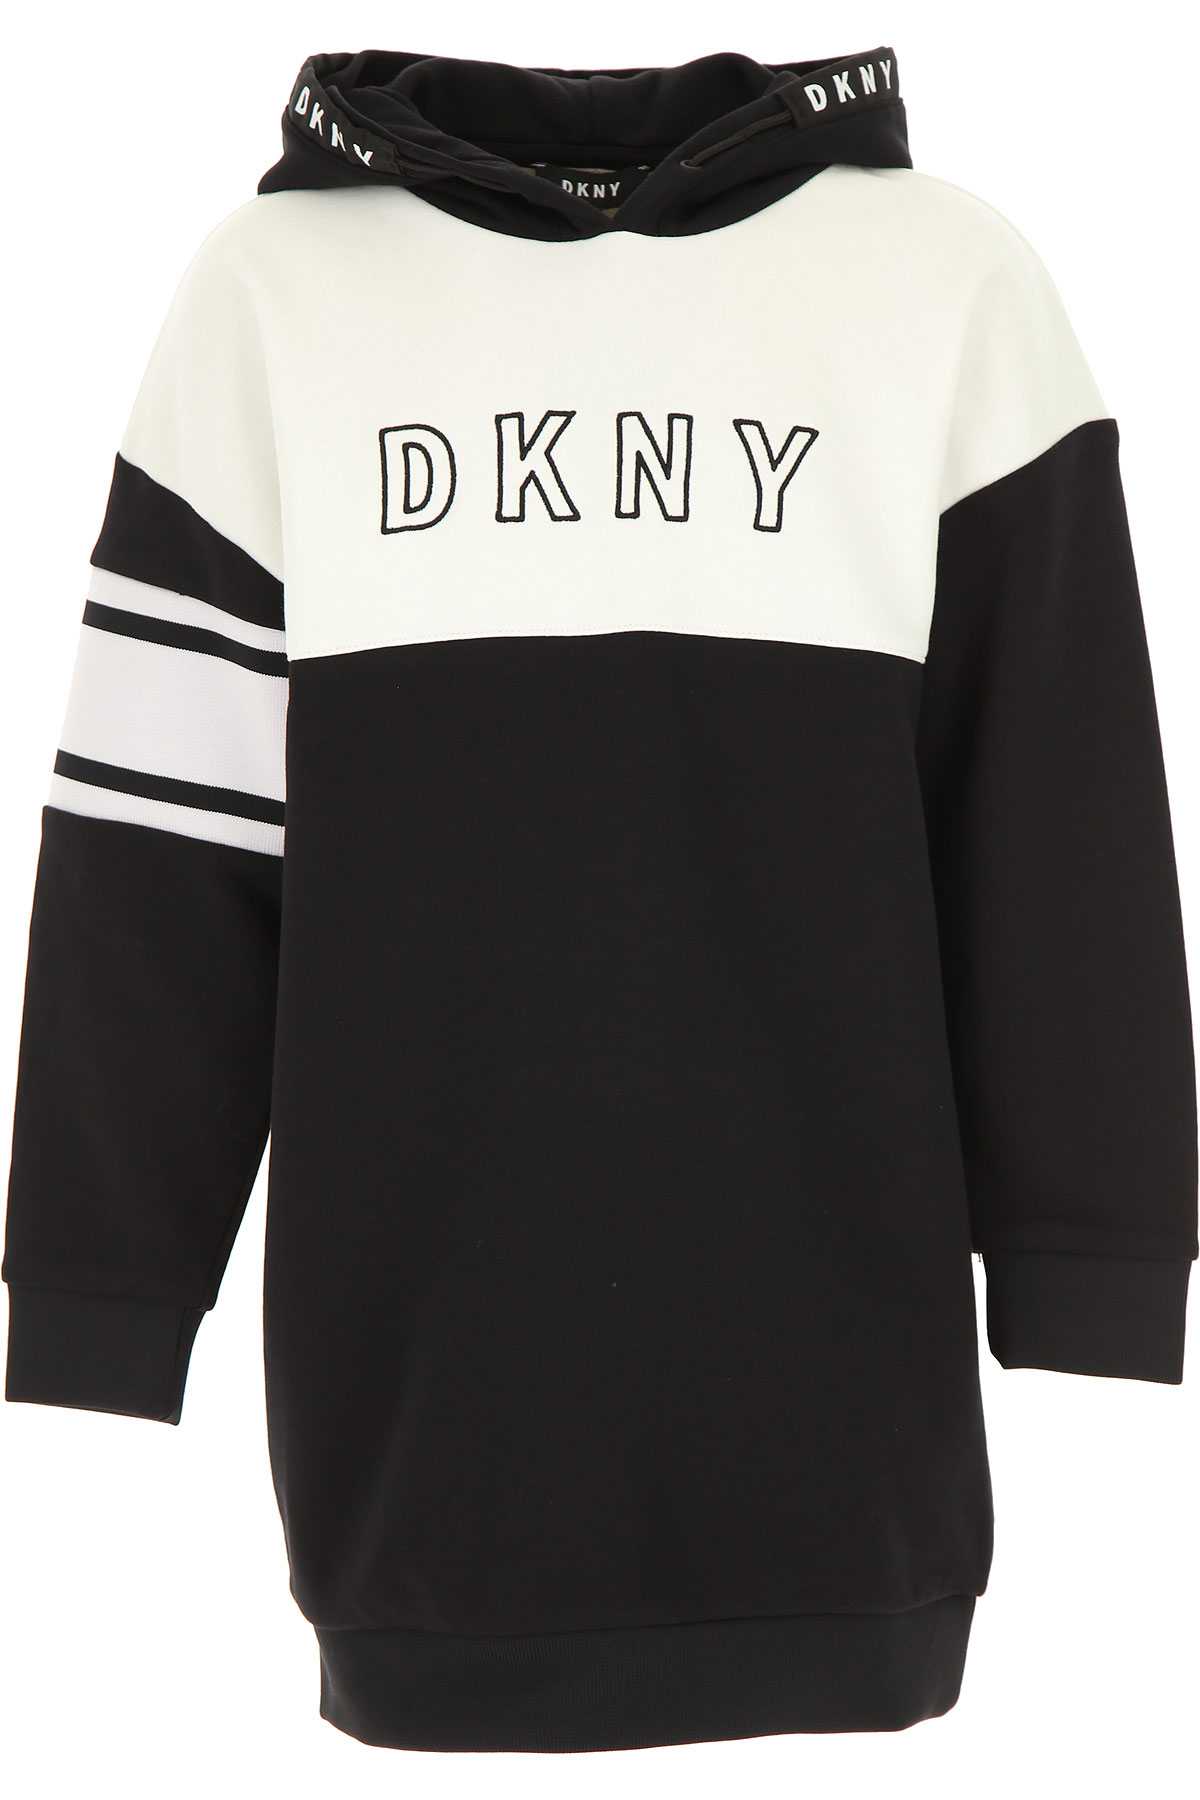 DKNY Kleid für Mädchen Günstig im Sale, Schwarz, Baumwolle, 2017, 12Y 14Y